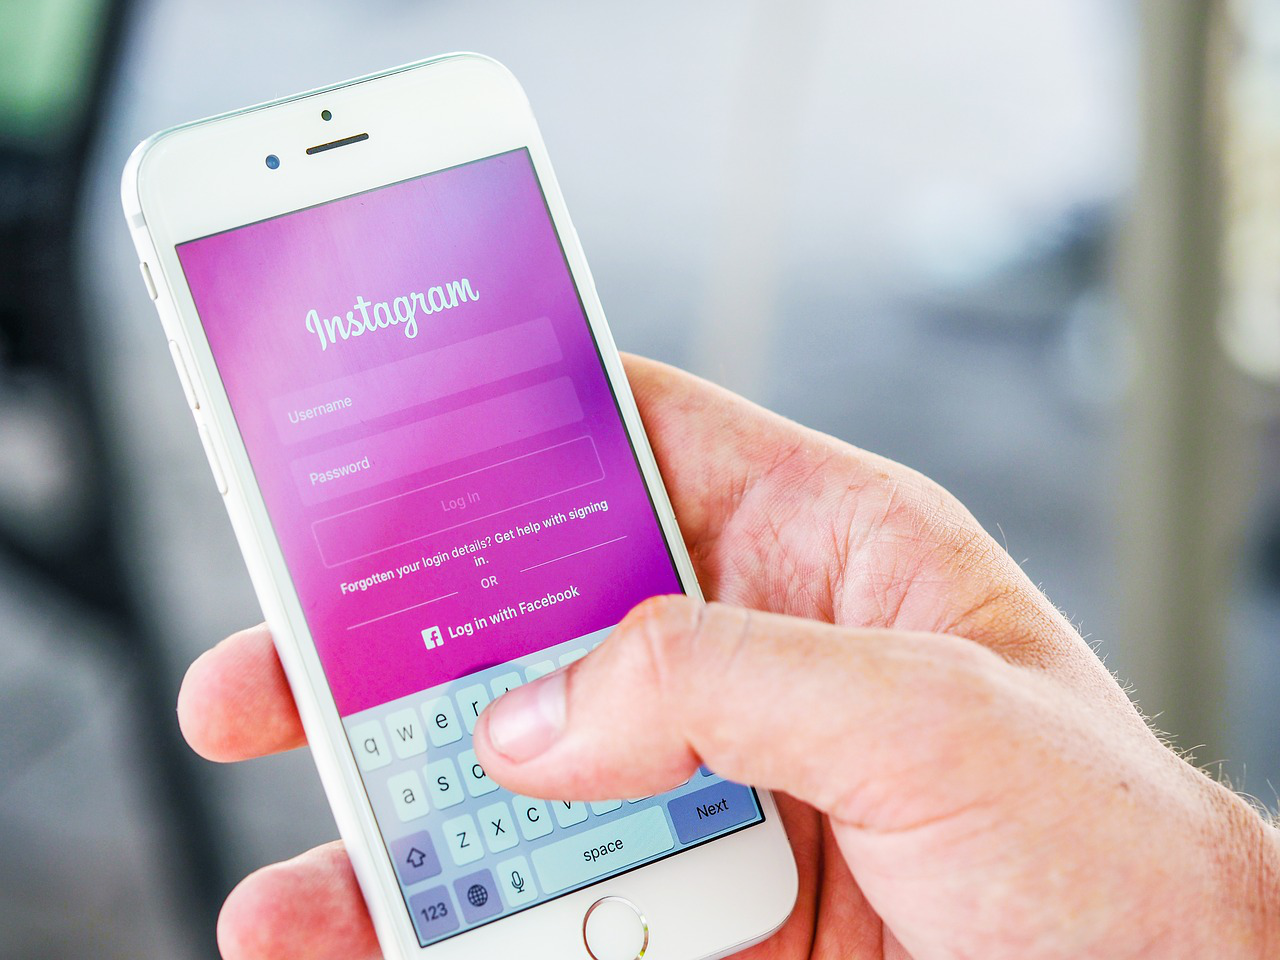 Pao Instagram, korisnici prijavljuju probleme